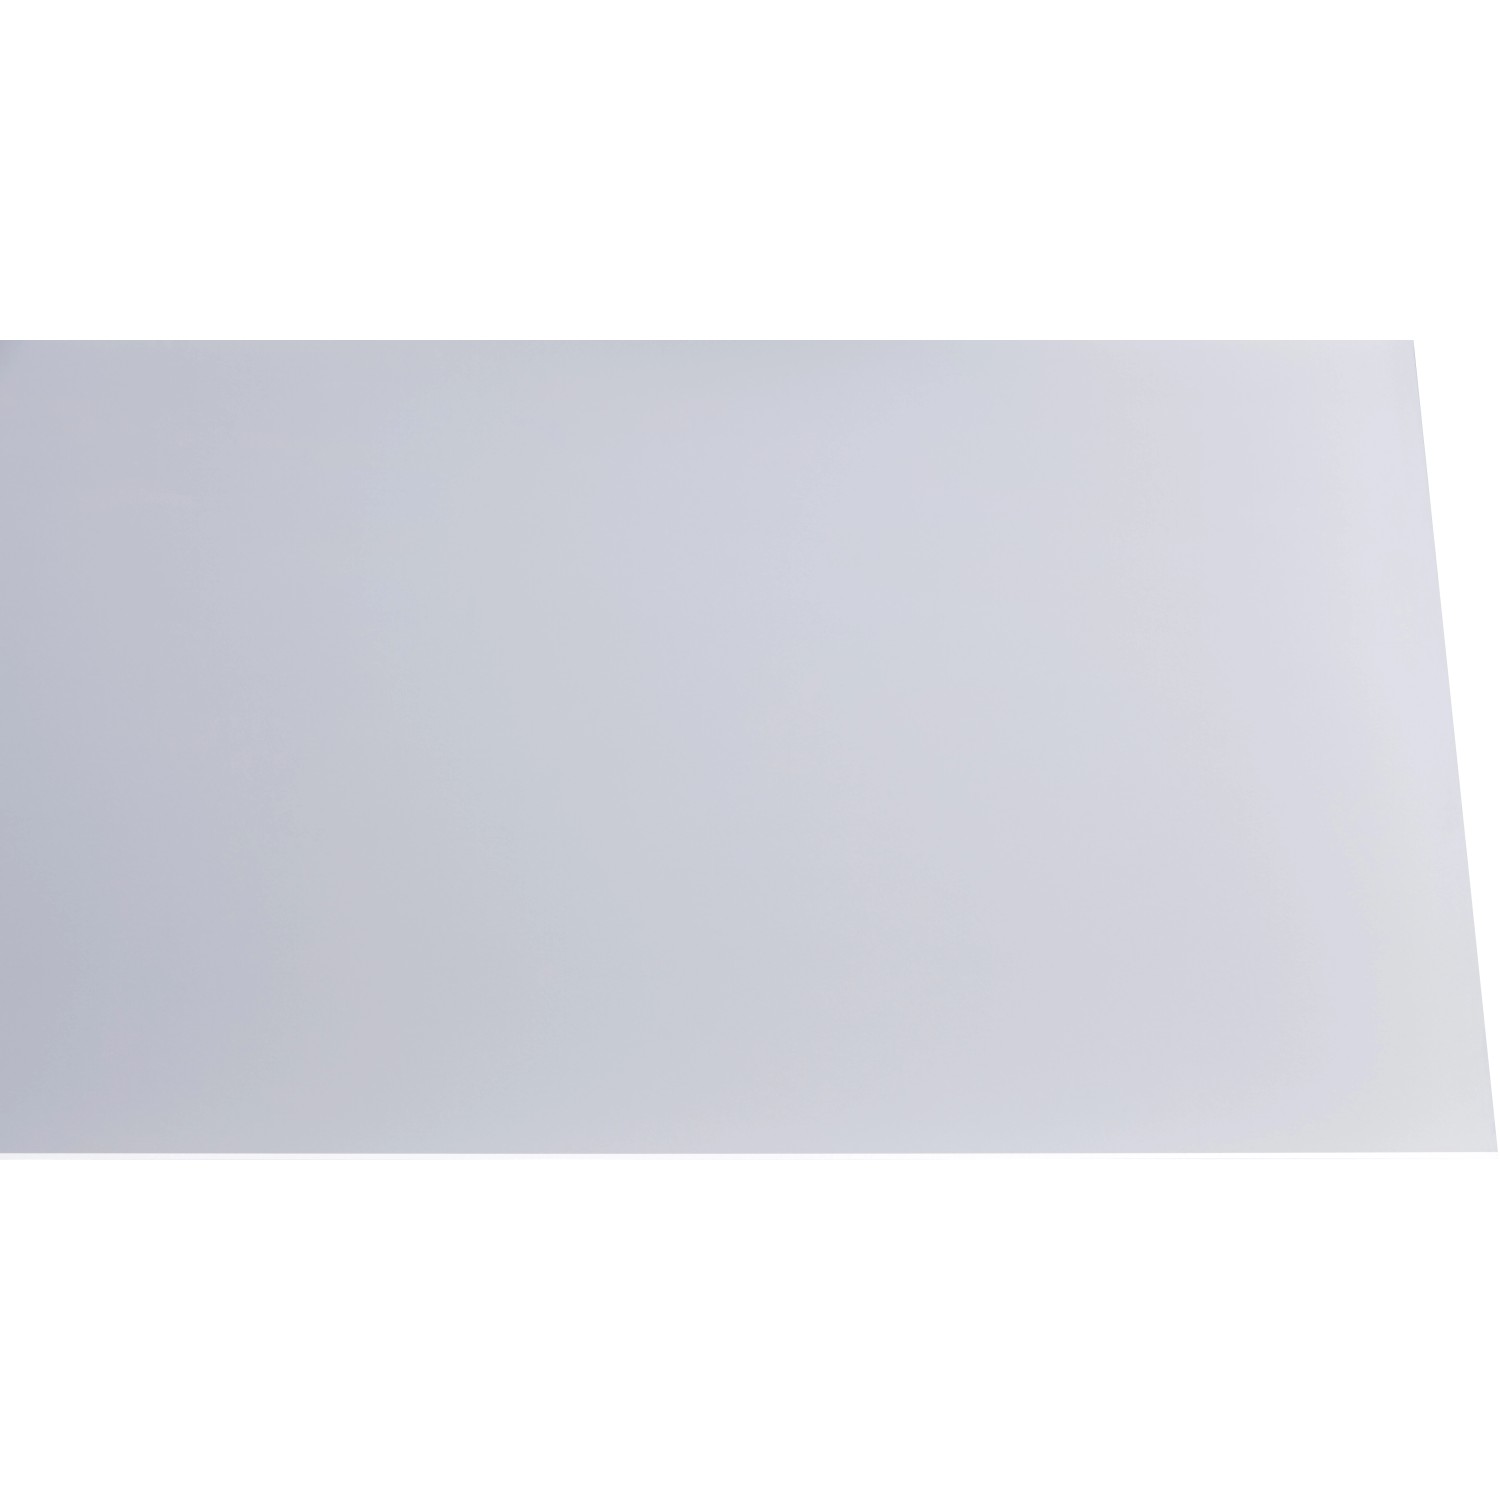 Acryl Platte Eben 3 mm Glatt Soft Weiß 1000 mm x 1000 mm kaufen bei OBI